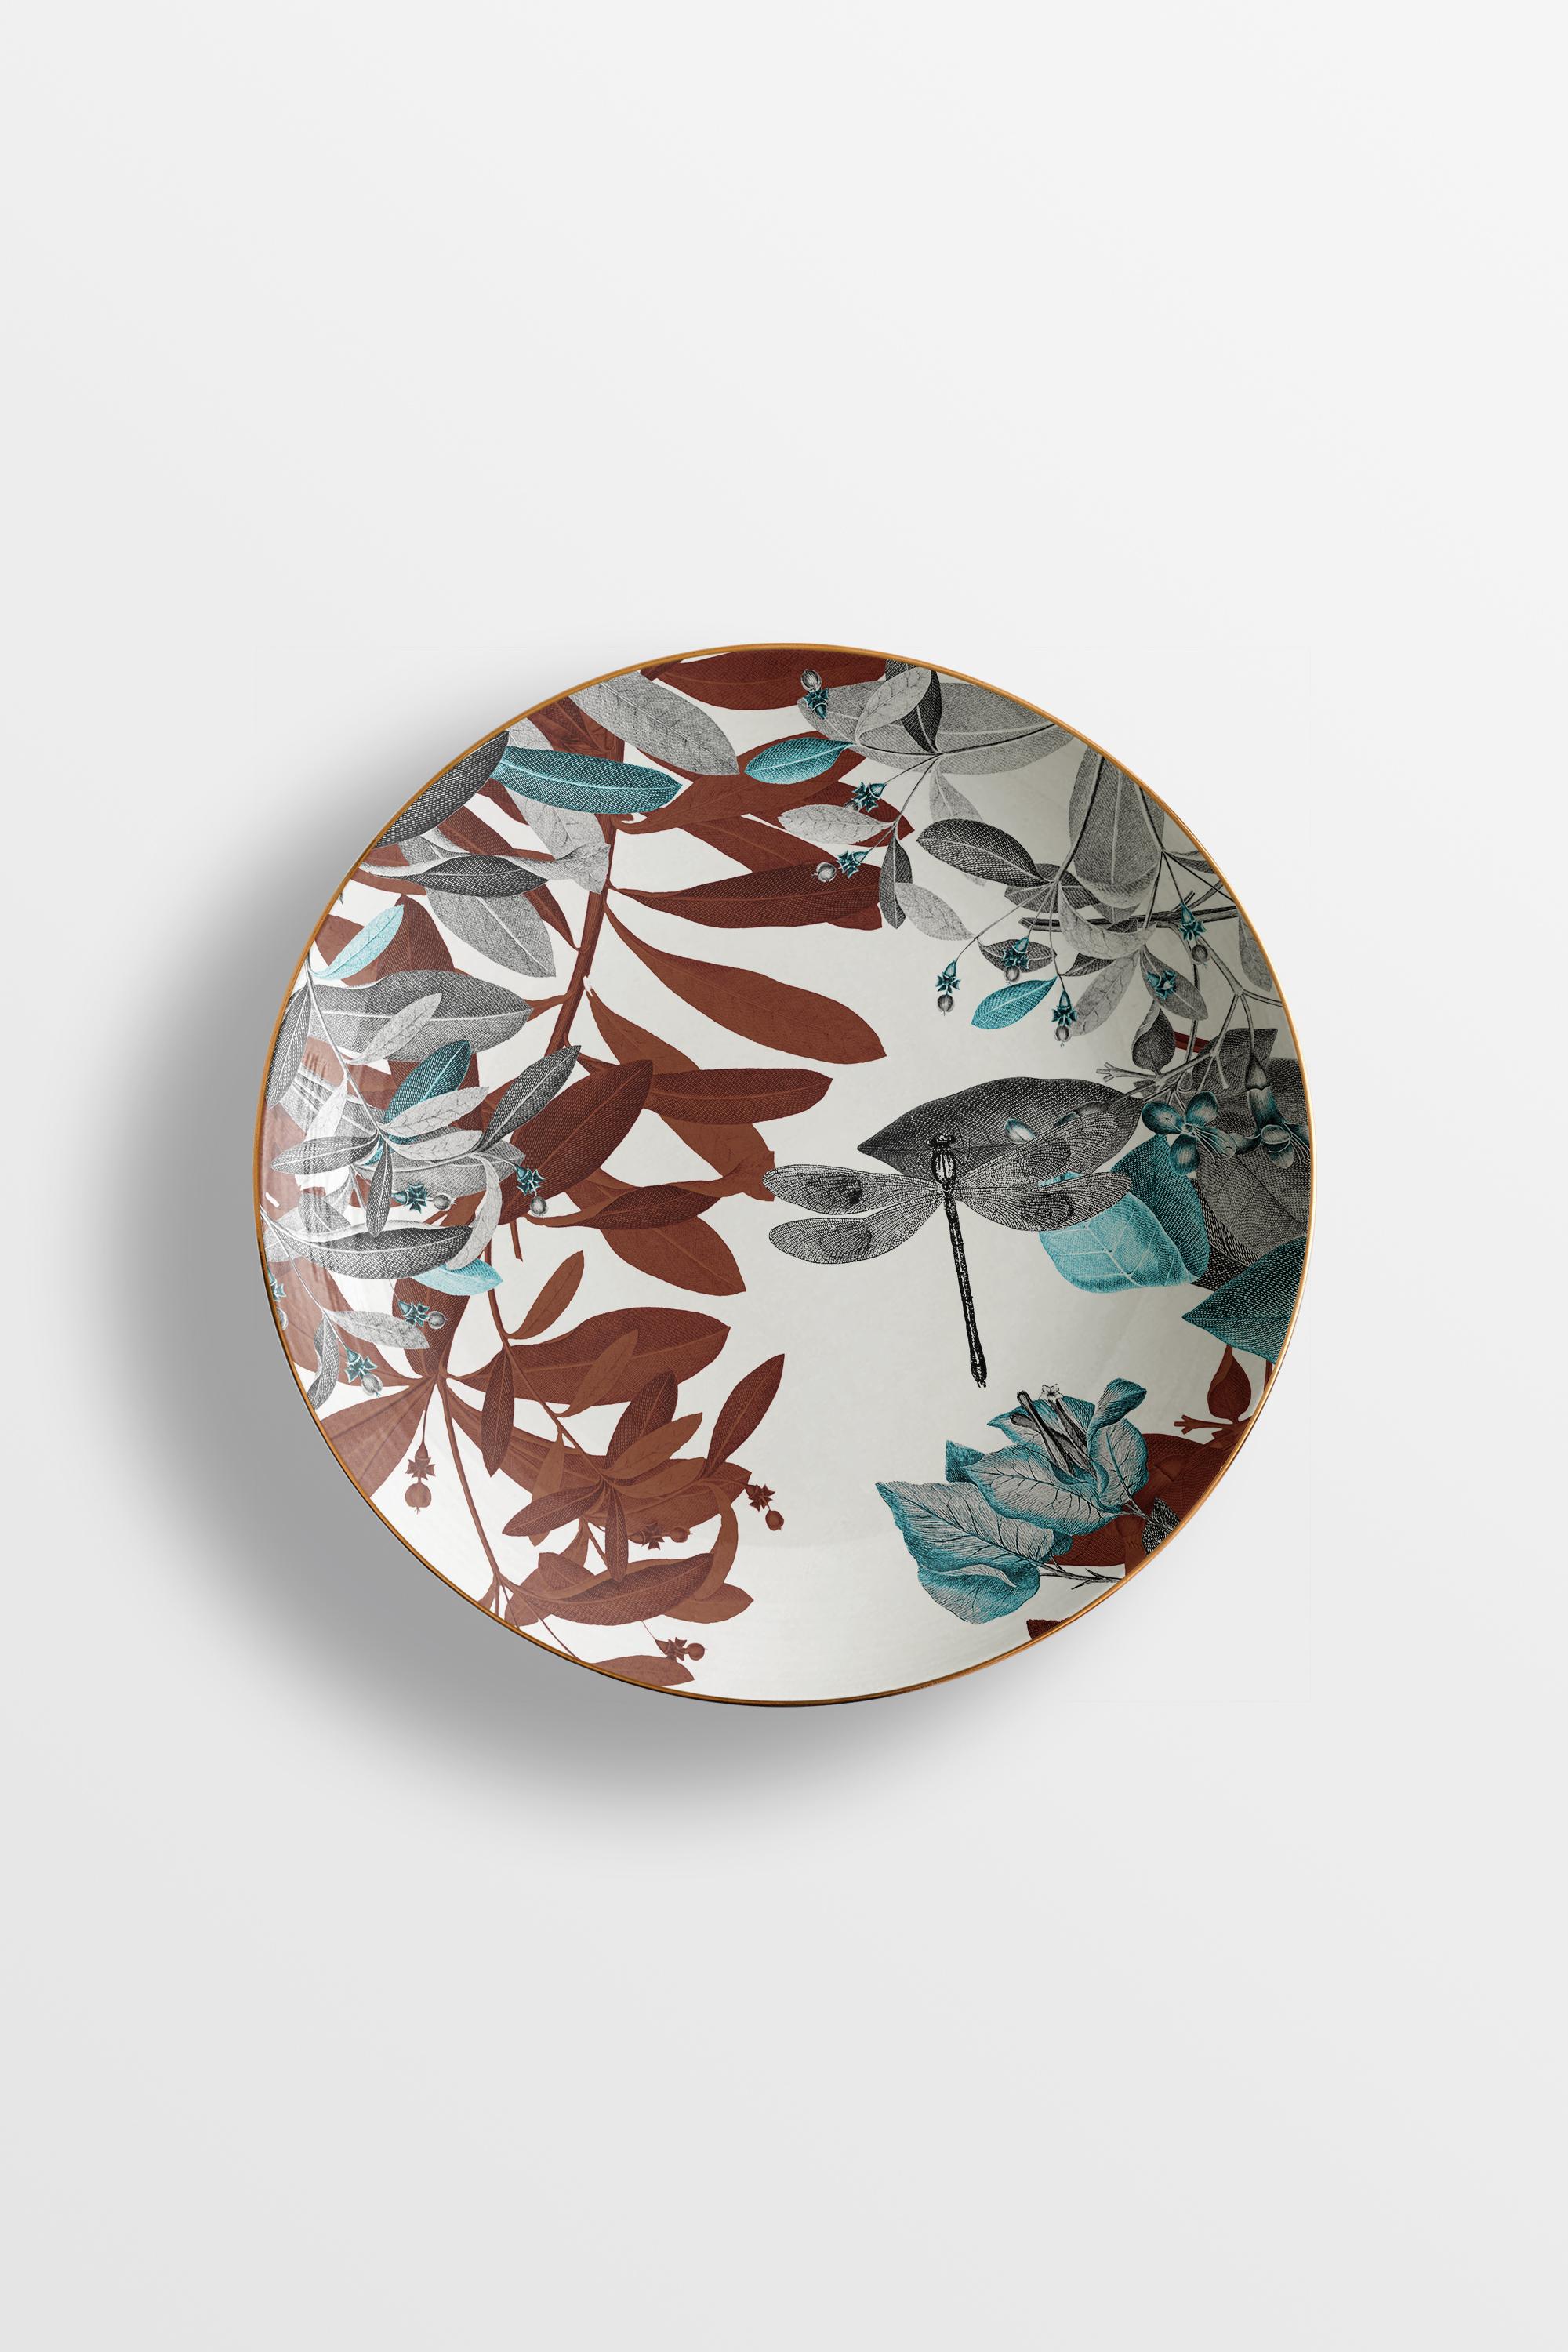 Black Dragon, Six Contemporary Porcelain soup plates with Decorative Design For Sale 1